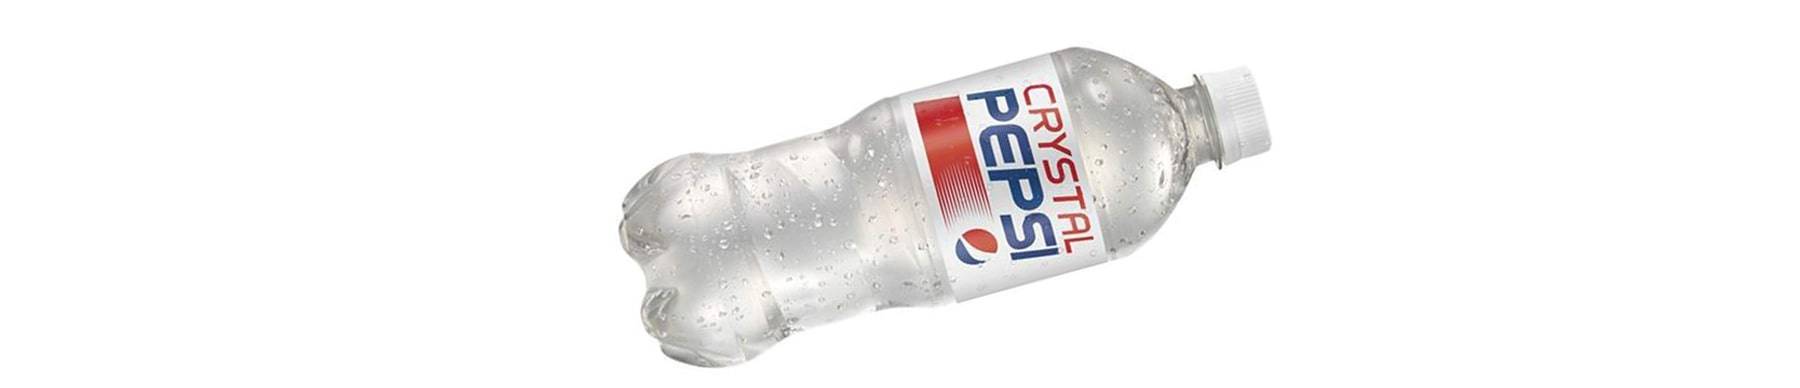 PepsiCo's Crystal Pepsi